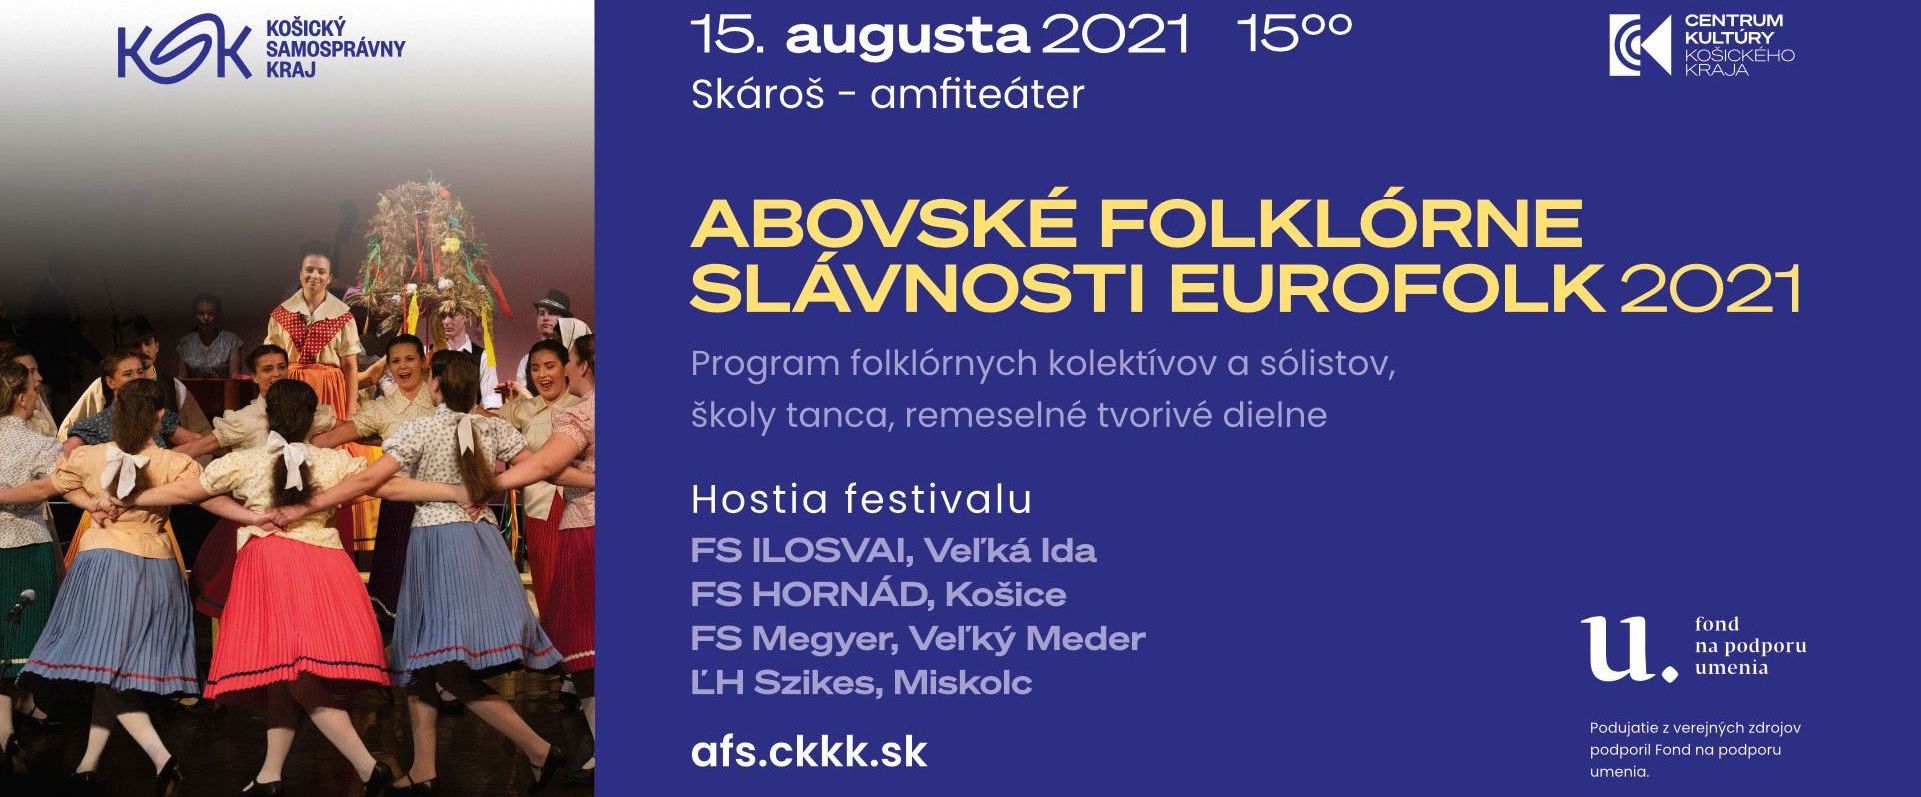 NOV - - - Abovsk folklrne slvnosti Eurofolk 2021 - 53. ronk